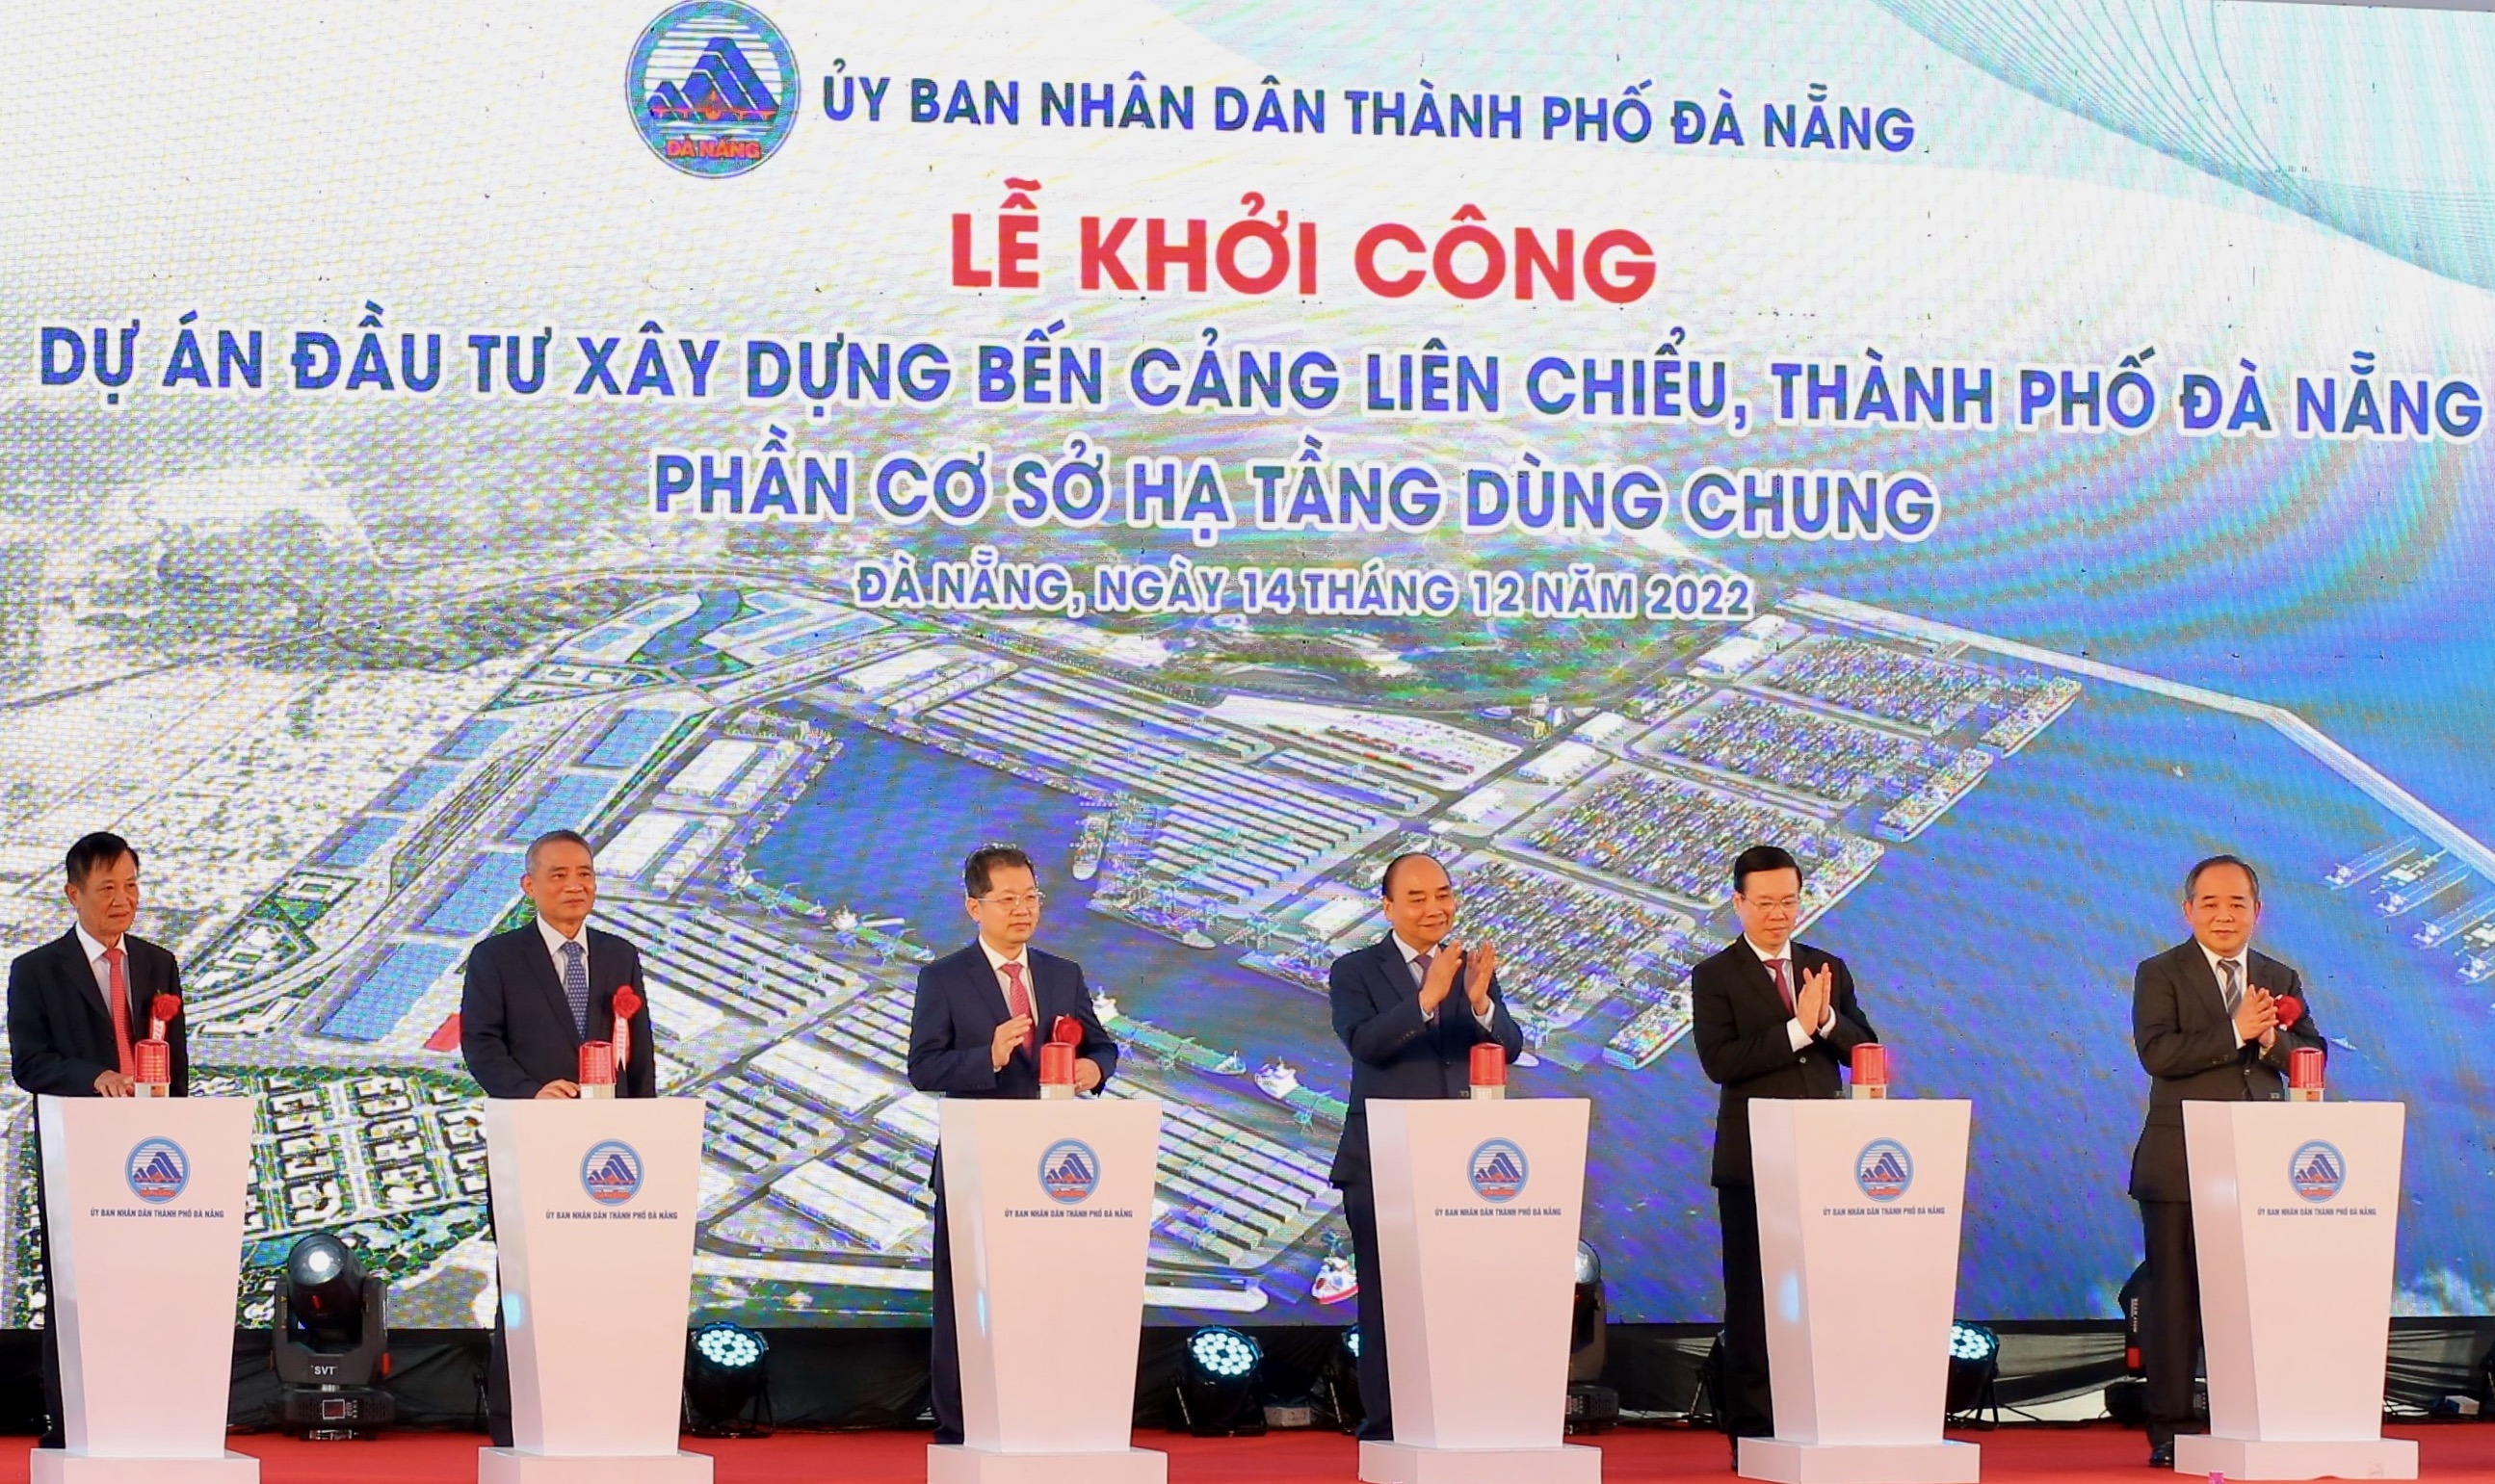 Đà Nẵng khởi công dự án Bến cảng Liên Chiểu - phần cơ sở hạ tầng dùng chung hơn 3.400 tỷ đồng